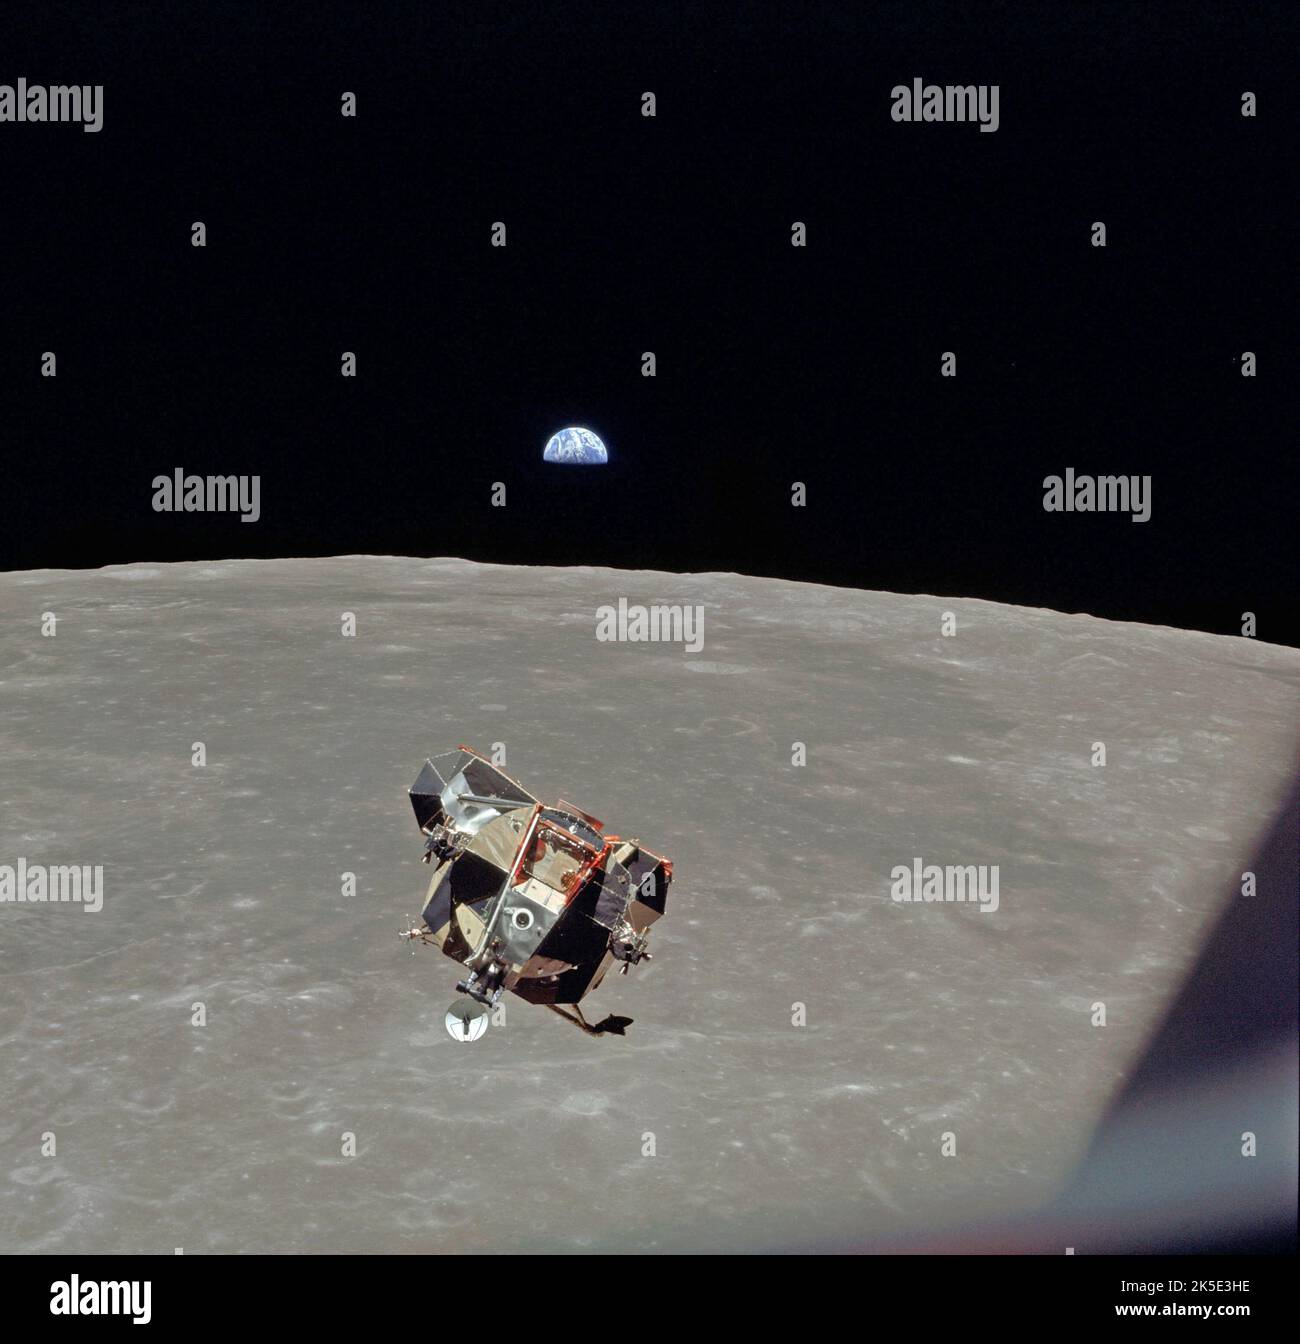 L'Aquila sorge! Il modulo lunare Apollo 11, l'Aquila, è salito dalla superficie della Luna per ancorarsi al modulo di comando e servizio (CSM). Questa immagine mostra la Modue lunare fotografata in orbita lunare dal modulo di comando e servizio mentre sale con la Terra sullo sfondo appena sopra l'orizzonte. All'interno dell'LM c'erano gli astronauti Neil Armstrong, comandante, ed Edwin Aldrin Jr., pilota LM, che esplorò la superficie della Luna mentre l'astronauta Michael Collins, pilota del modulo di comando, rimase con il CSM in orbita lunare. Un'immagine NASA ottimizzata: Credit: NASA Foto Stock